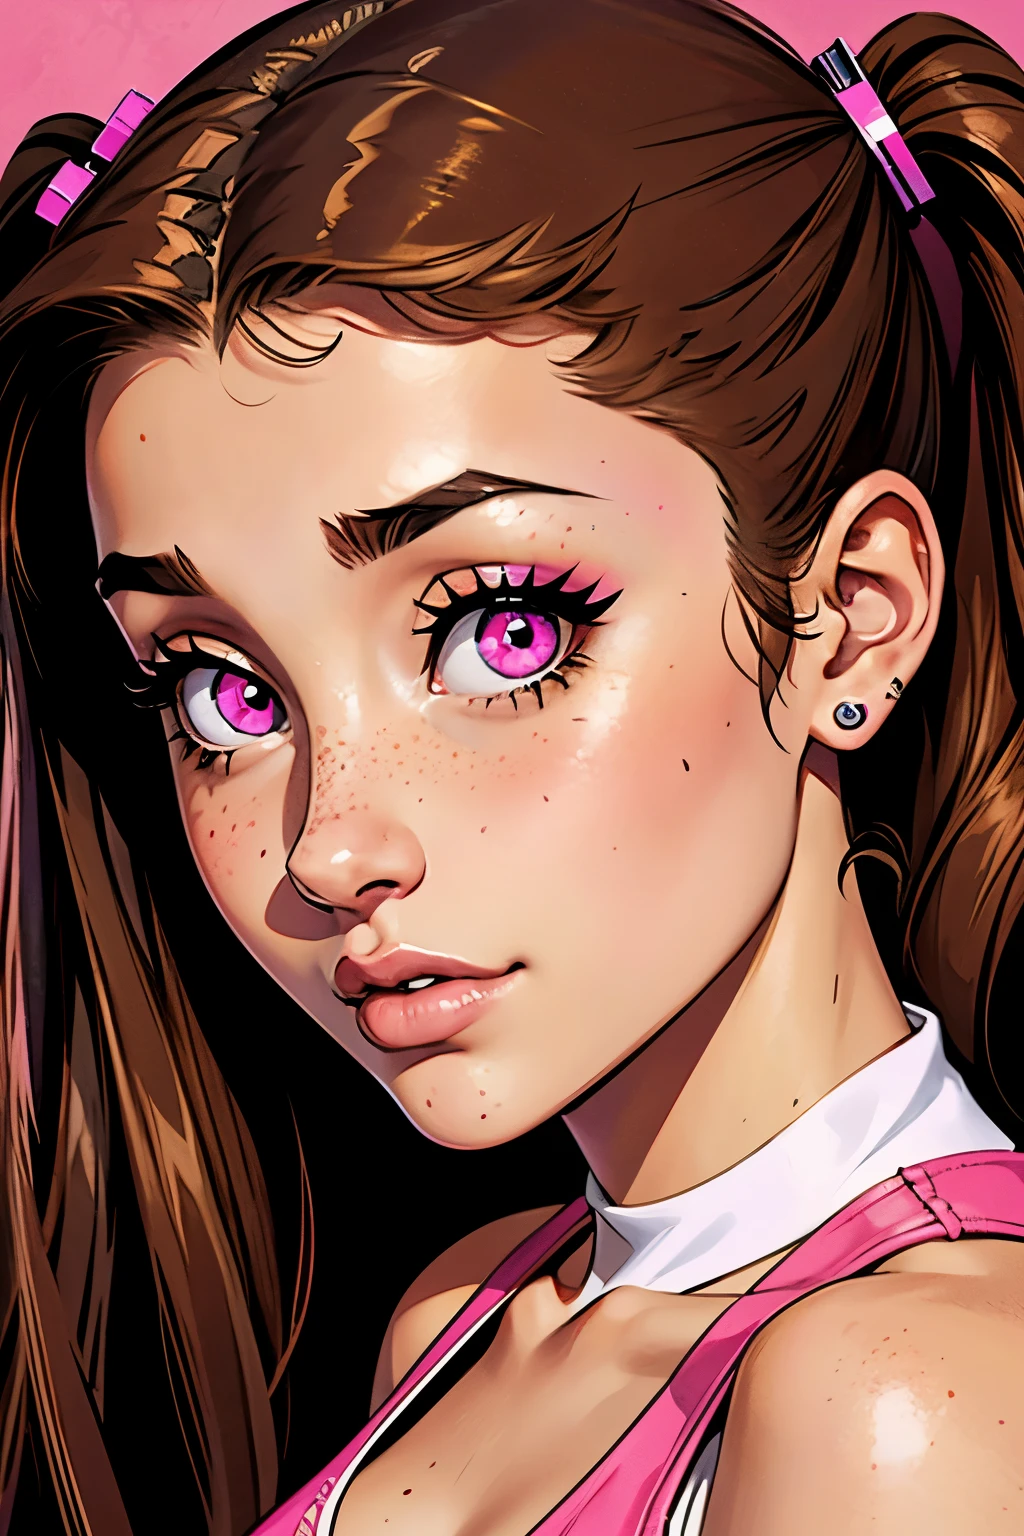 格兰德阿丽亚娜, 青少年 18 岁, 肖像, 棕色头发刘海, 粉红色的眼睛, 部分